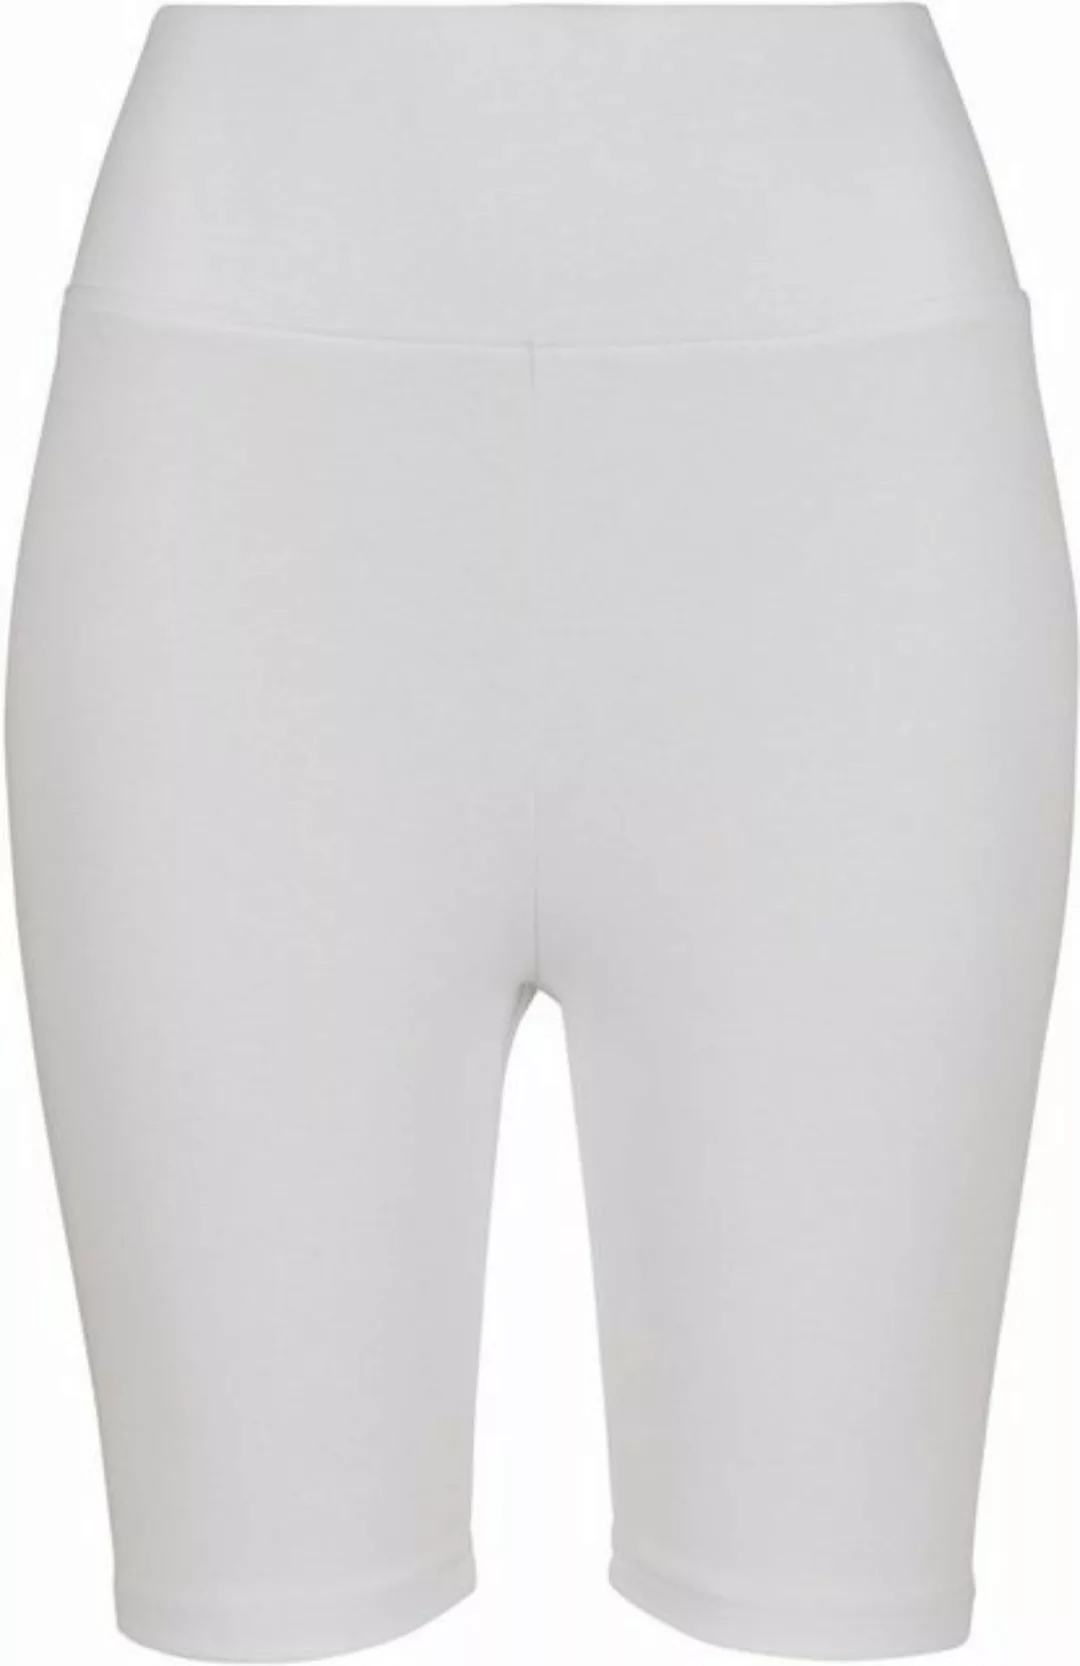 URBAN CLASSICS Shorts Ladies High Waist Cycle Shorts XS bis 5XL günstig online kaufen